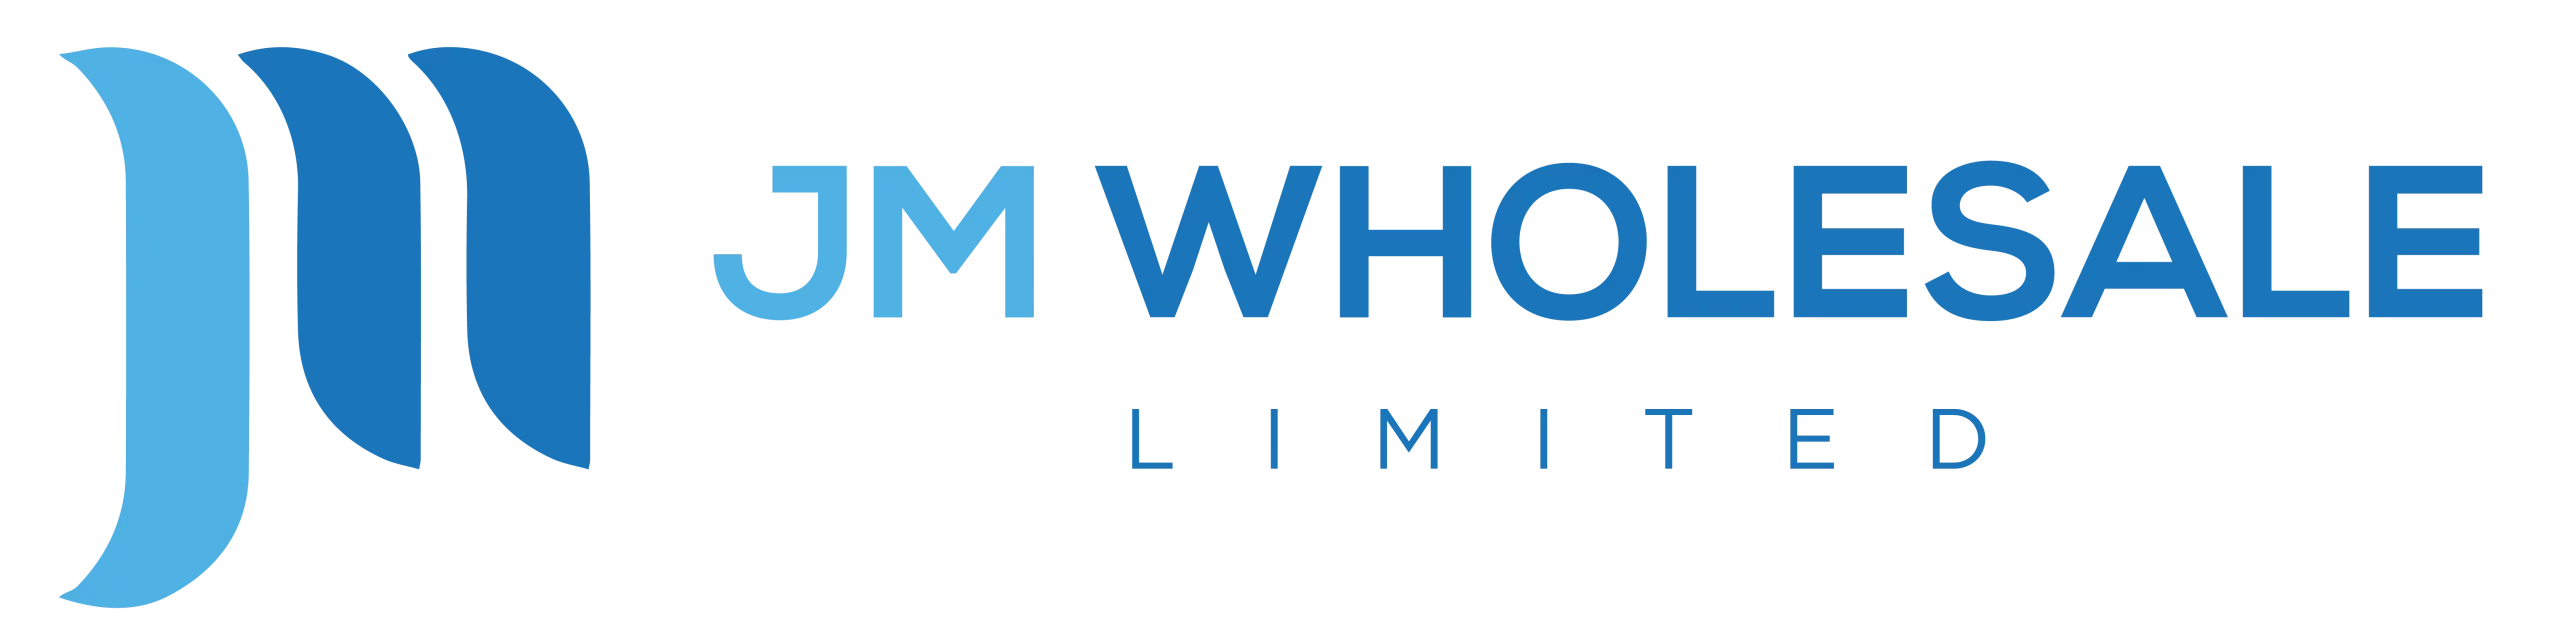 JM wholesale logo